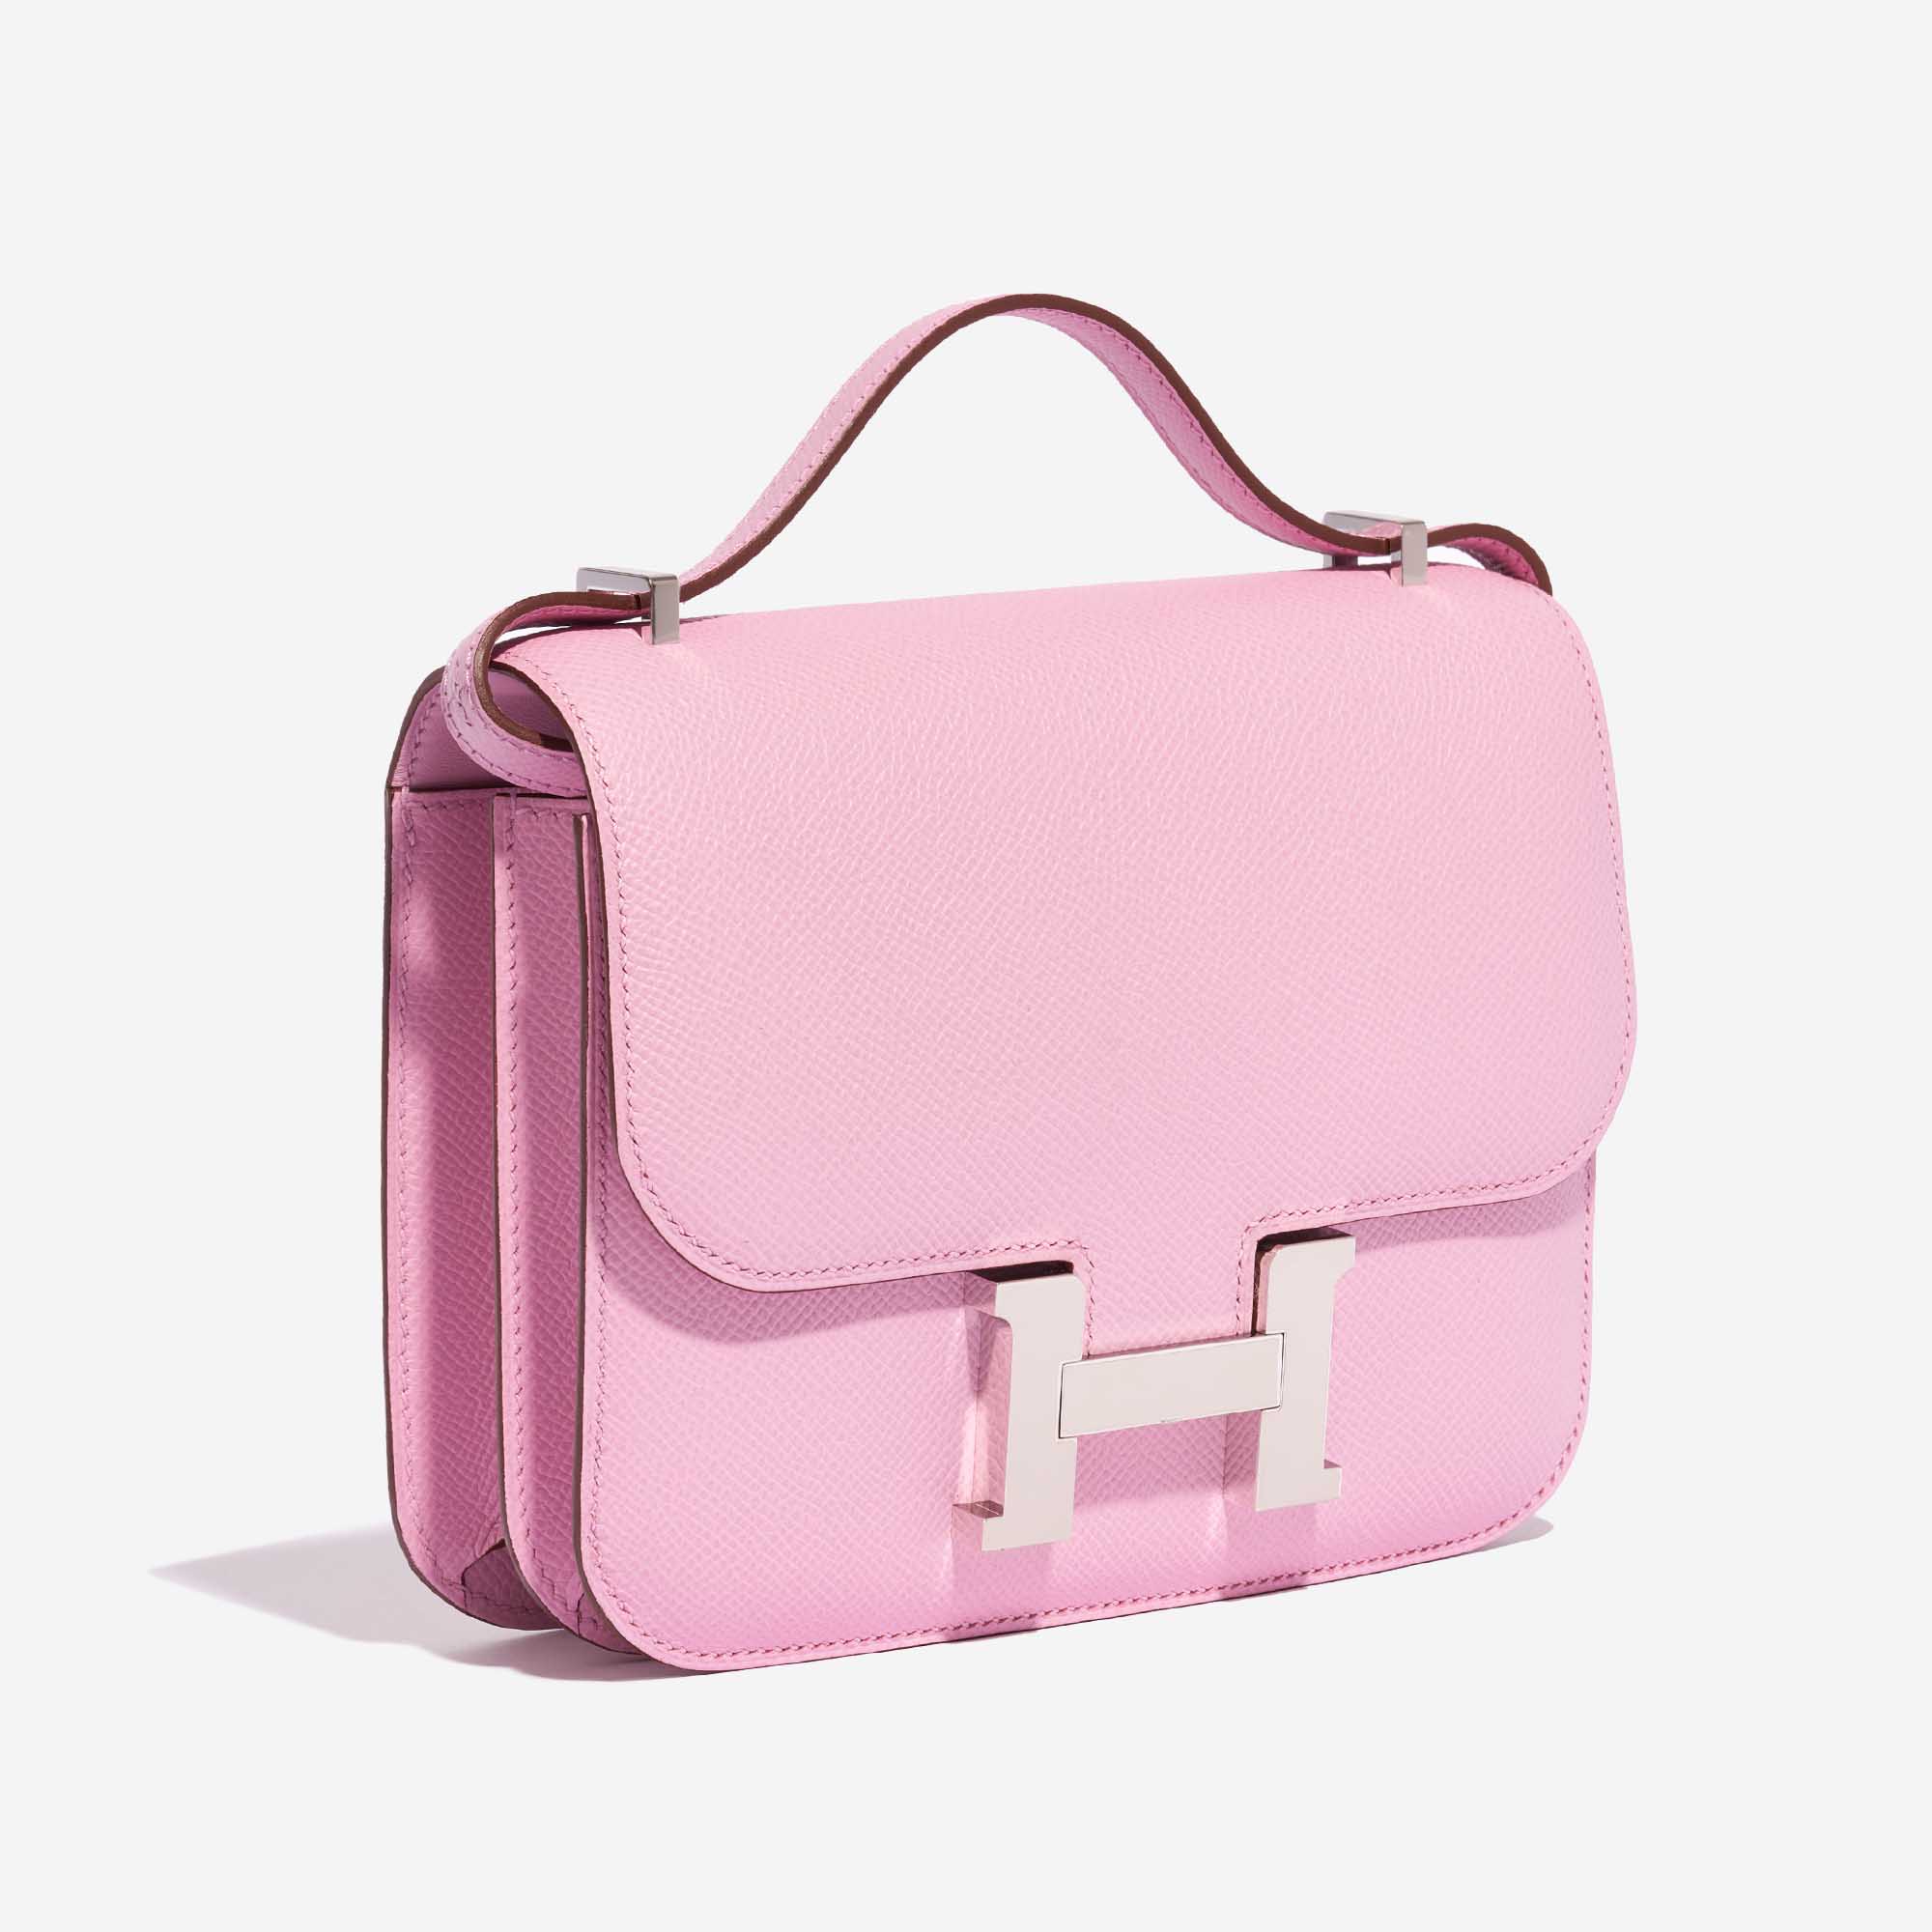 Pre-owned Hermès Tasche Constance 18 Epsom Mauve Sylvestre Pink Side Front | Verkaufen Sie Ihre Designer-Tasche auf Saclab.com